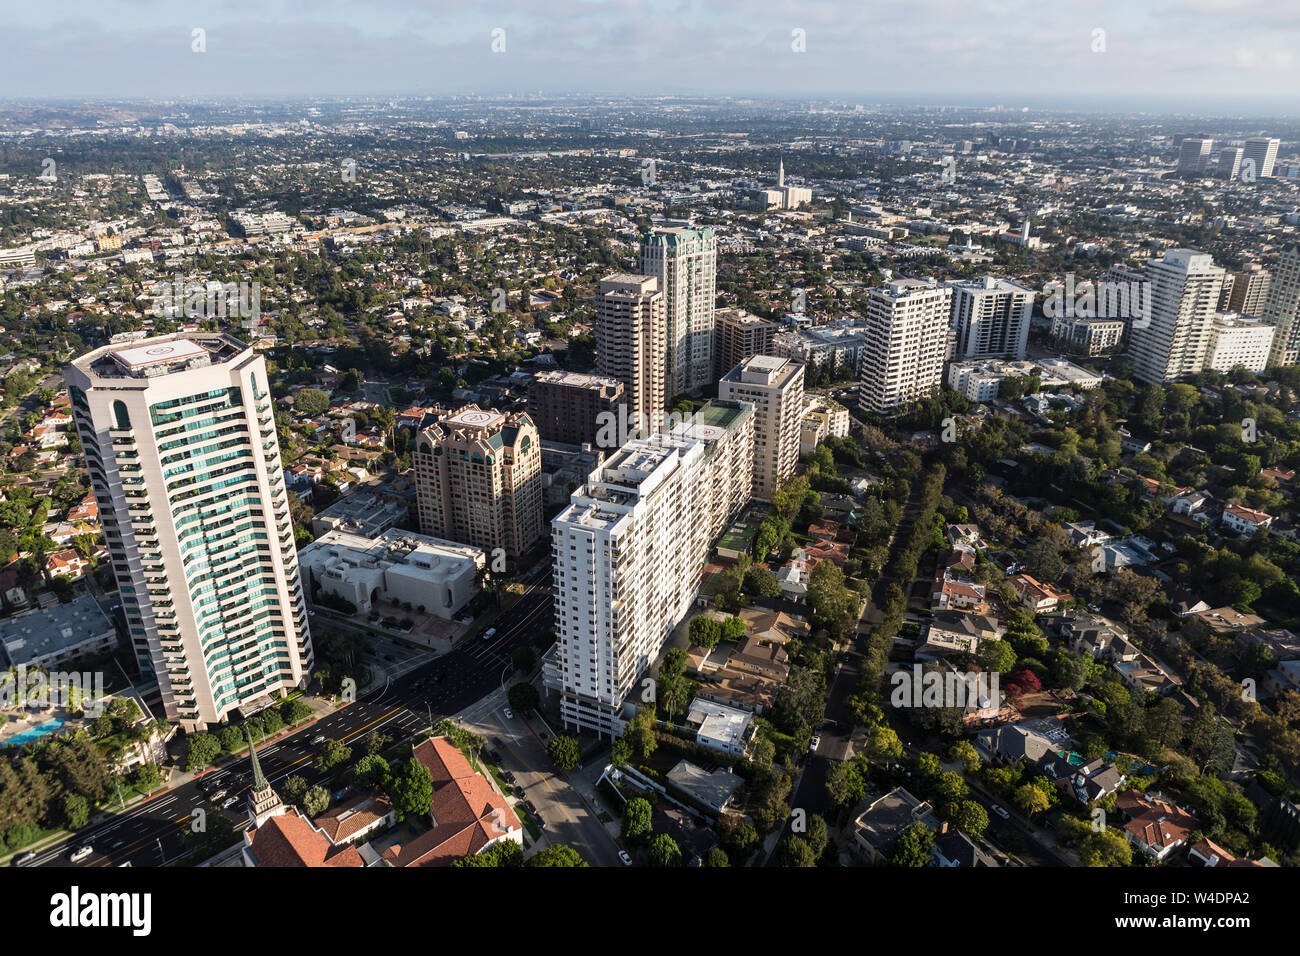 Vista aérea de condominios, apartamentos y casas a lo largo de Wilshire Blvd cerca de Westwood en Los Angeles, California. Foto de stock